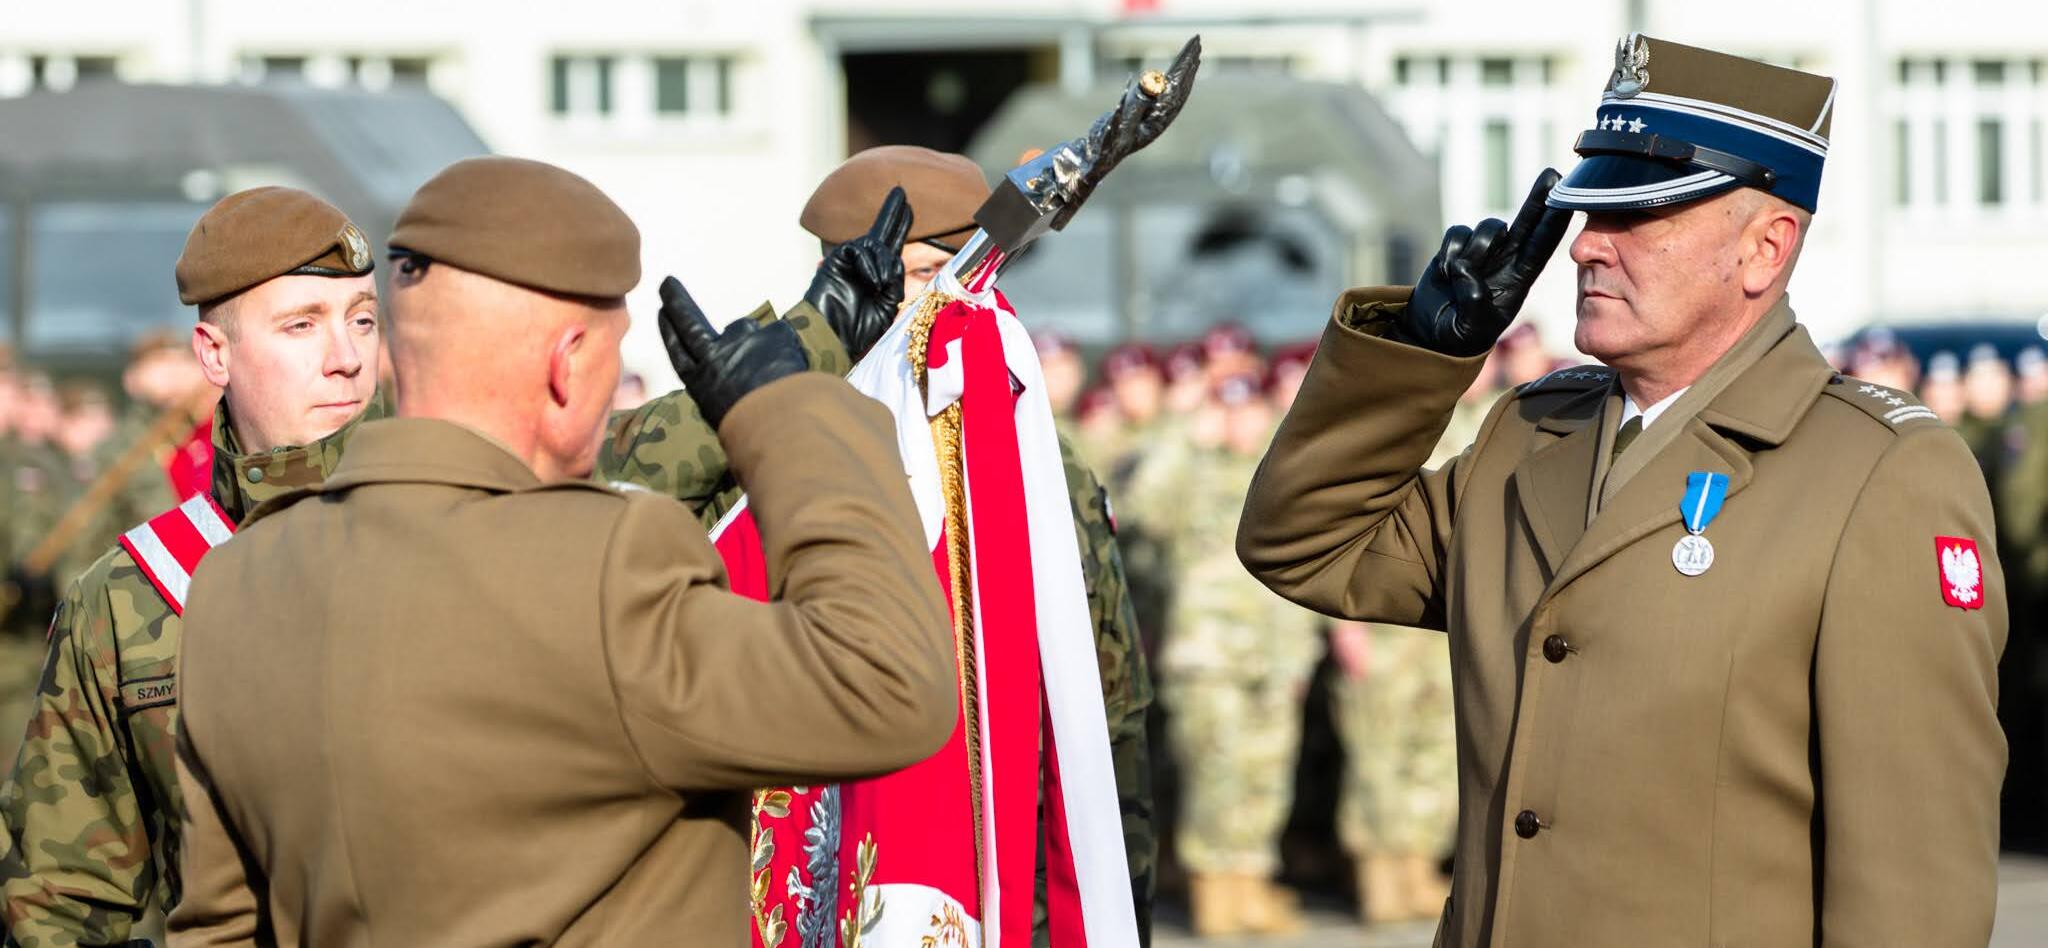 Oficerowie salutują przed pochylonym sztandarem wojskowym